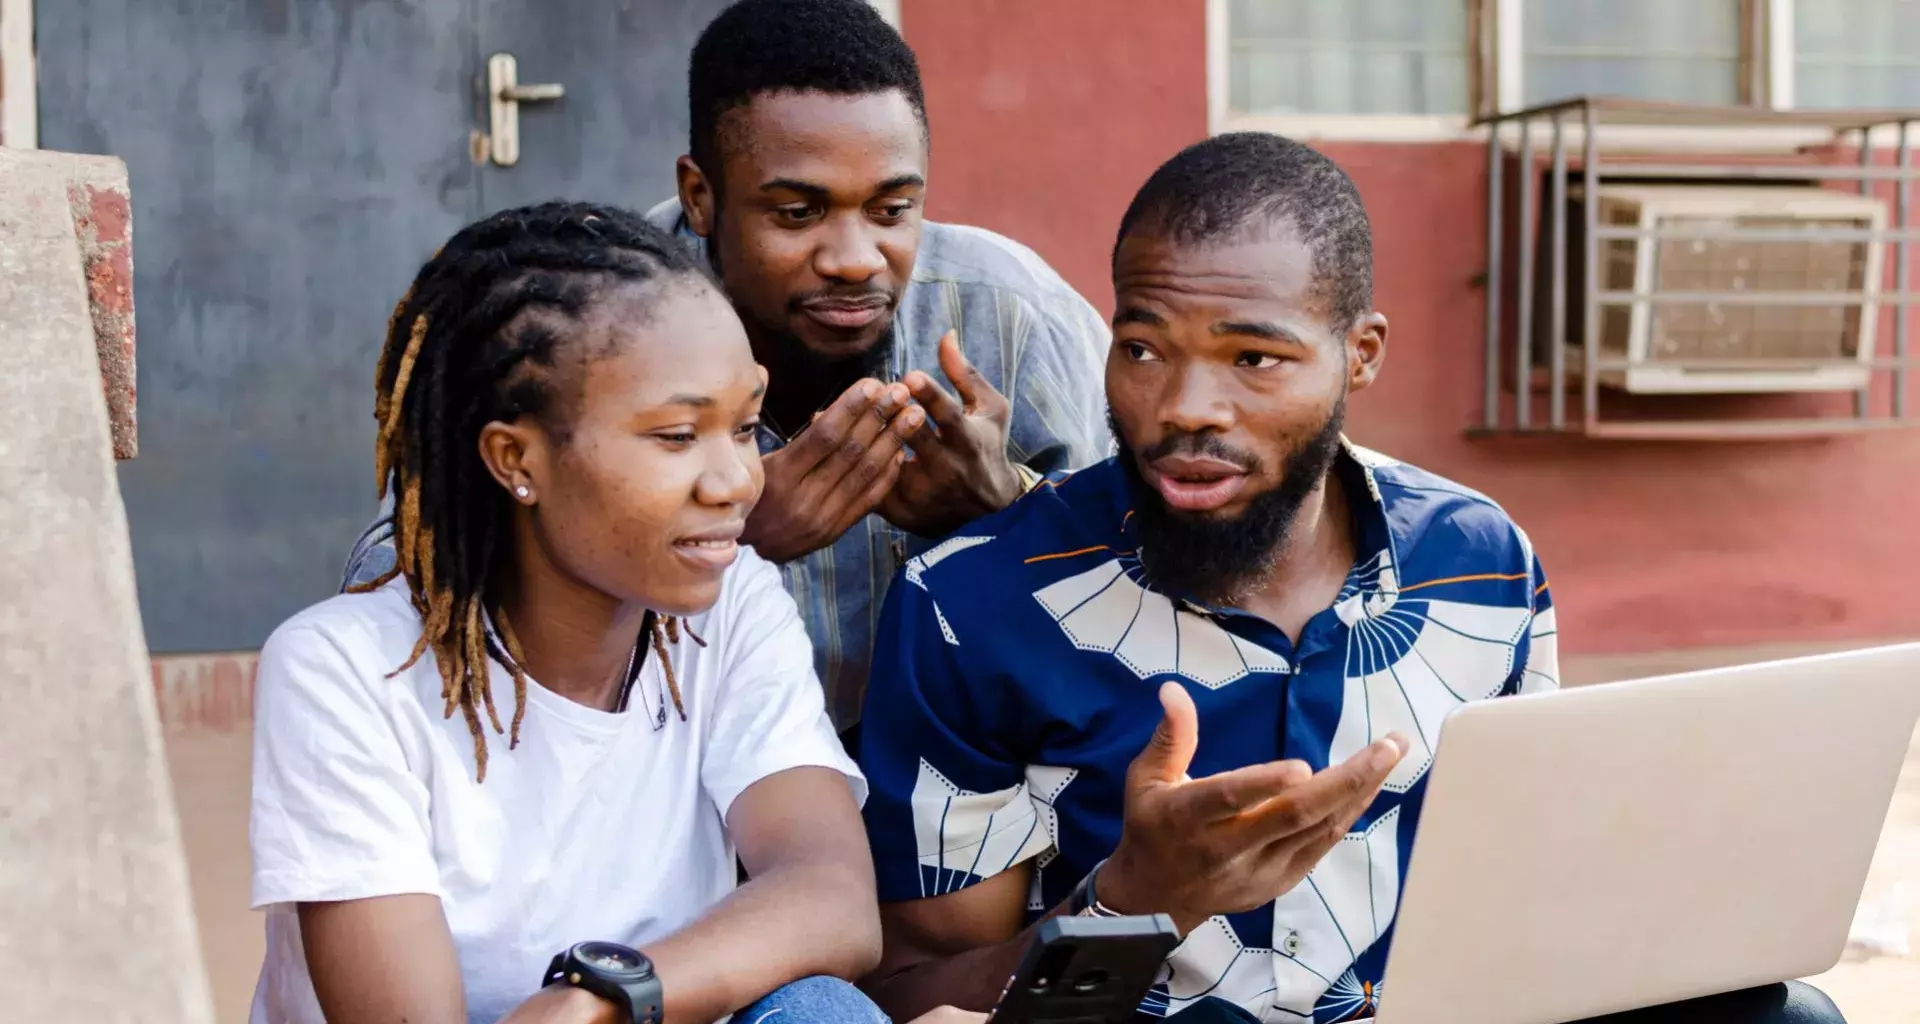 2 jóvenes y 1 chica africana, observando una laptop.